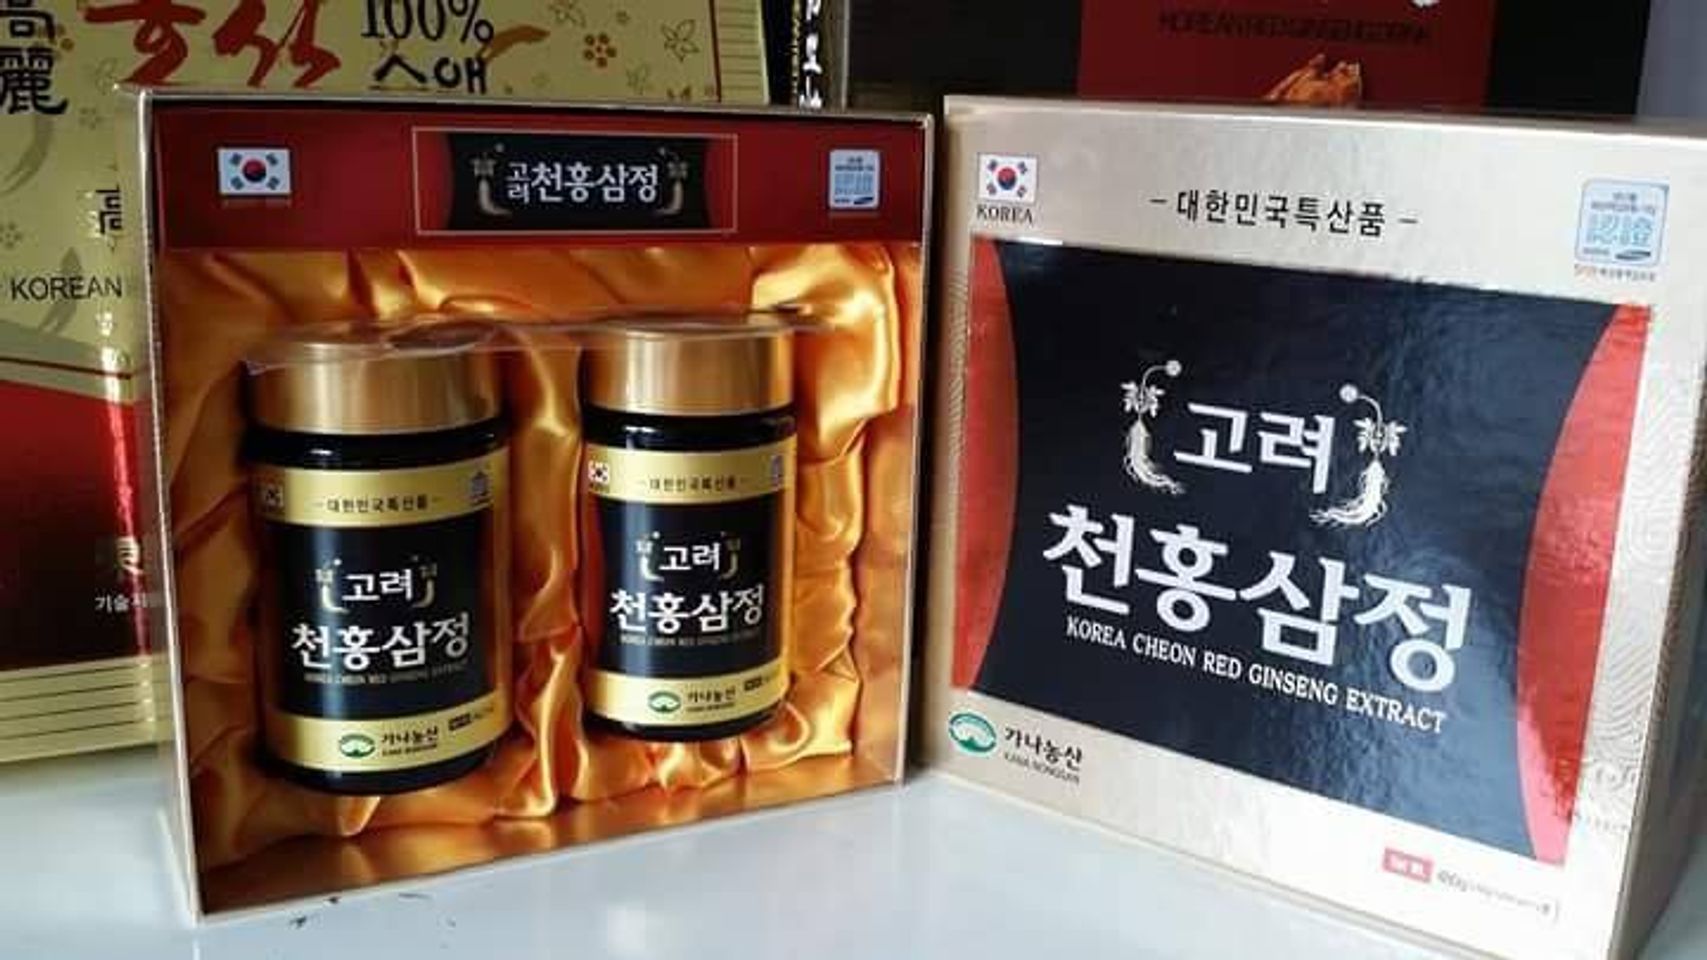 Hộp 2 lọ cao hồng sâm Kana Hàn Quốc tăng cường sức khỏe